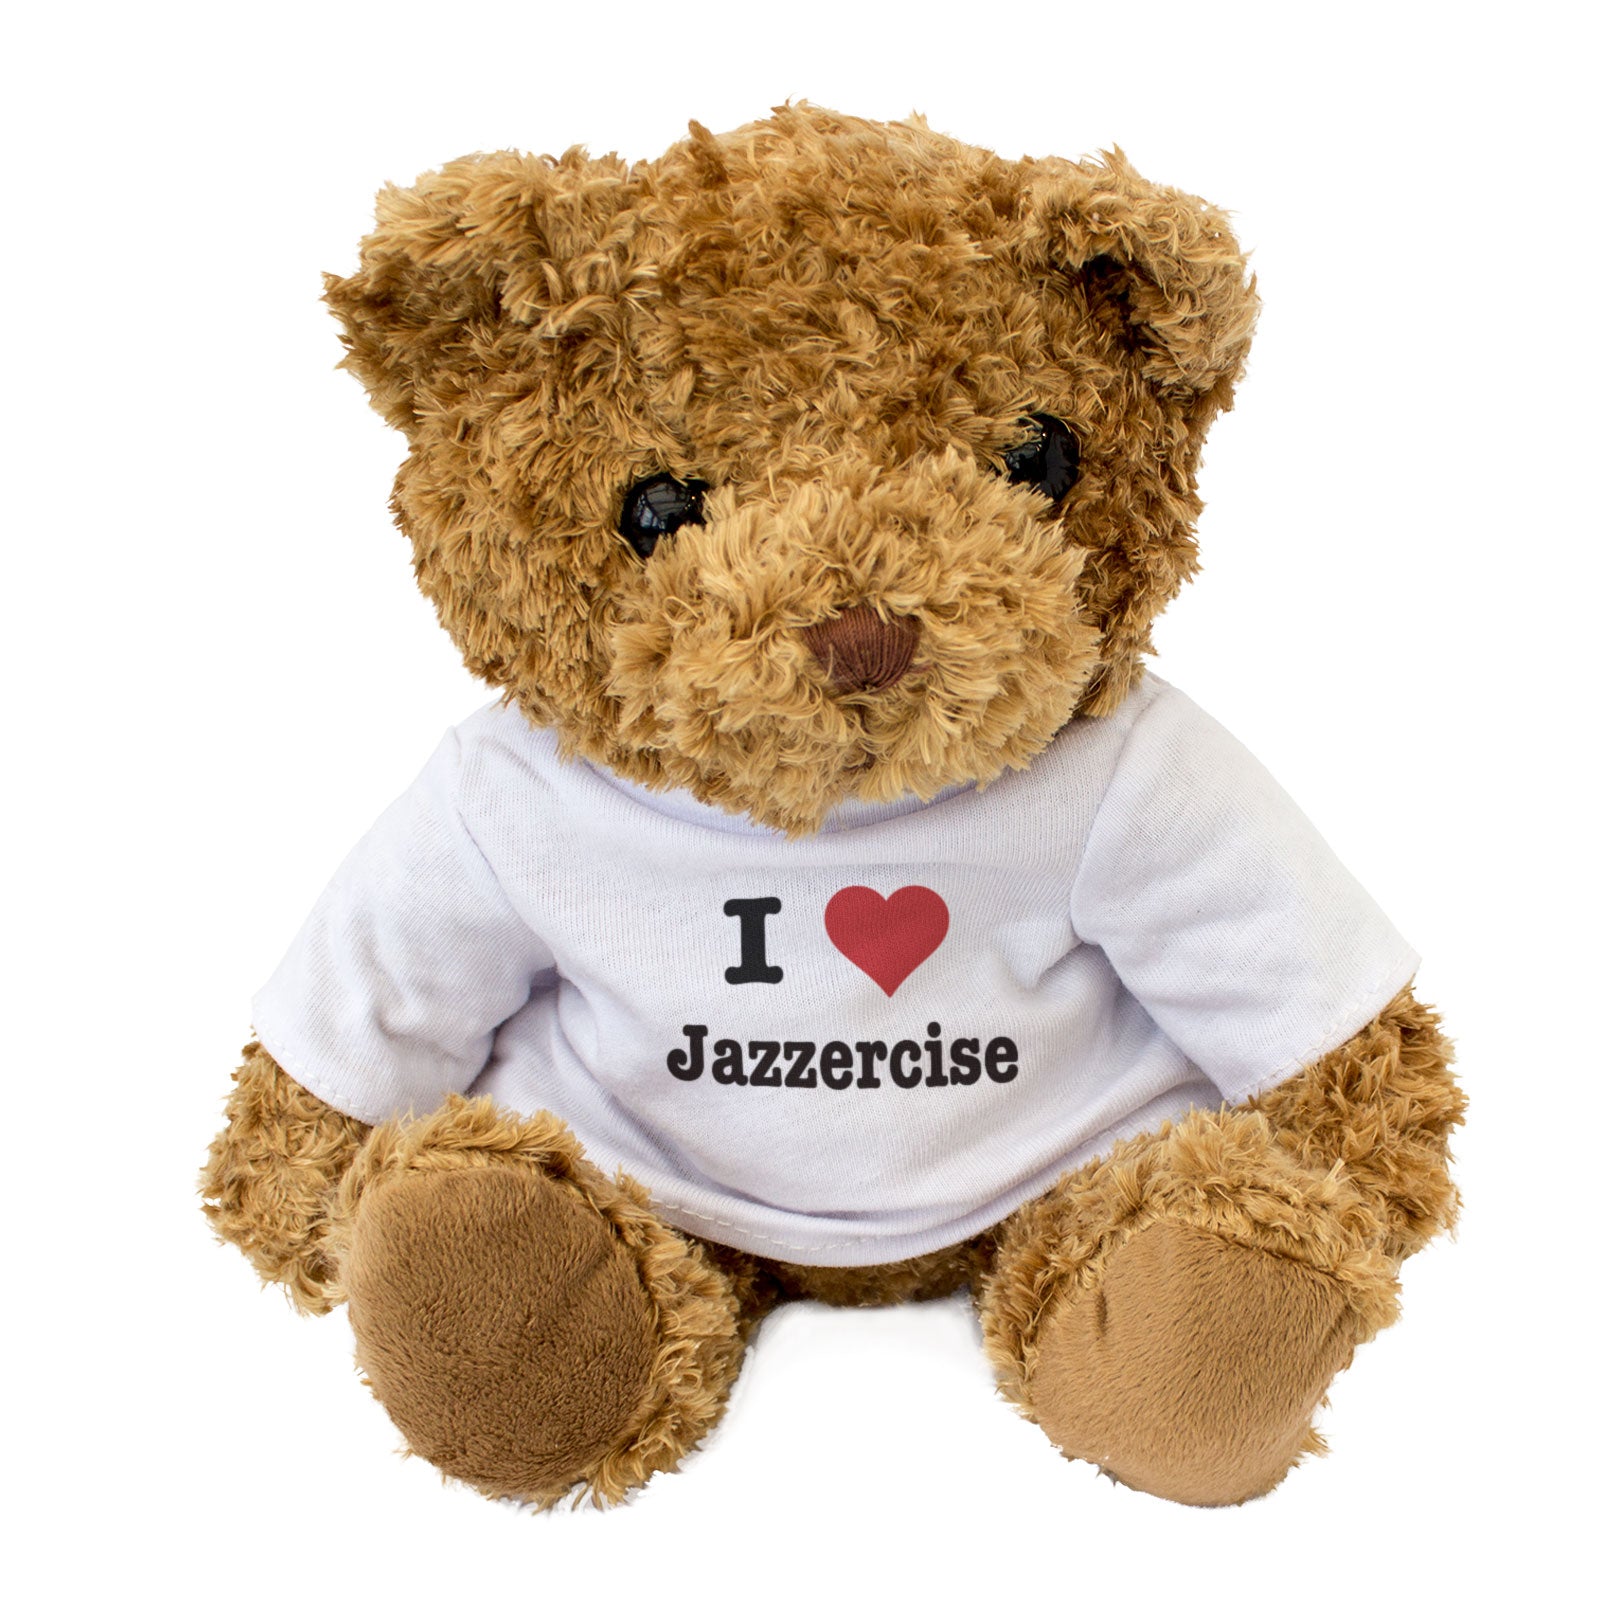 I Love Jazzercise - Teddy Bear